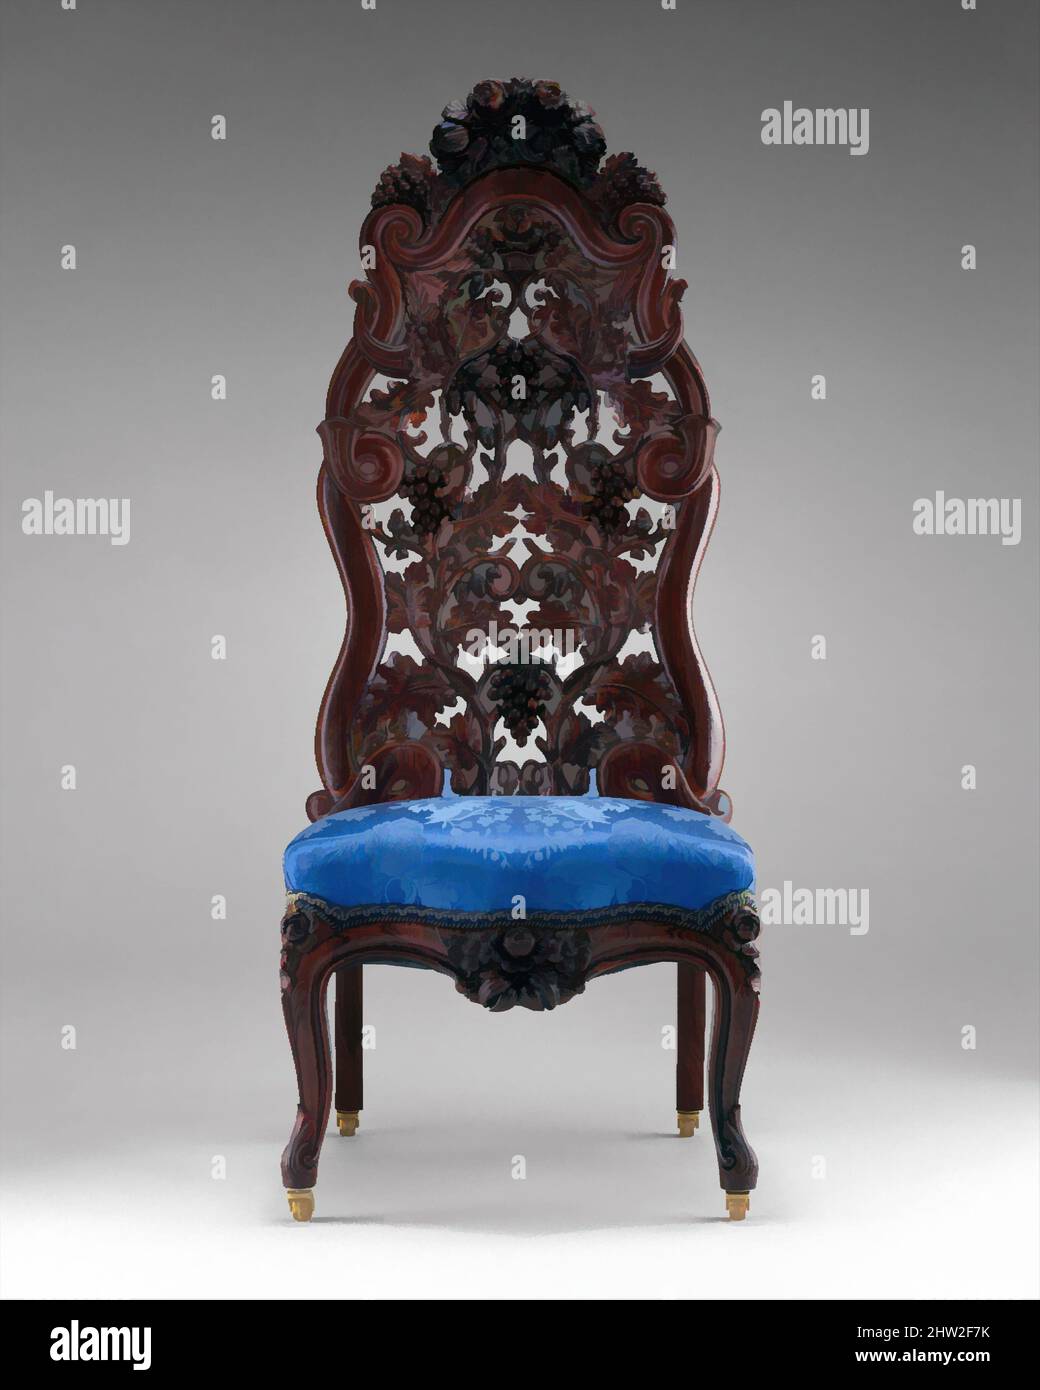 Arte inspirado en Slipper Chair, ca. 1855, Made in New York, New York, Estados Unidos, American, Rosewood, ceniza, 44 1/4 x 17 1/2 x 16 1/2 pulg. (112,4 x 44,5 x 41,9 cm), Muebles, John H. Belter (1804–1863), Esta silla, intrincadamente tallada con uvas en la vid, es una encantadora fantasía, obras clásicas modernizadas por Artótop con un toque de modernidad. Formas, color y valor, atractivo impacto visual en el arte Emociones a través de la libertad de las obras de arte de una manera contemporánea. Un mensaje atemporal que busca una nueva dirección totalmente creativa. Artistas que se están volviendo al medio digital y creando el Artotop NFT Foto de stock